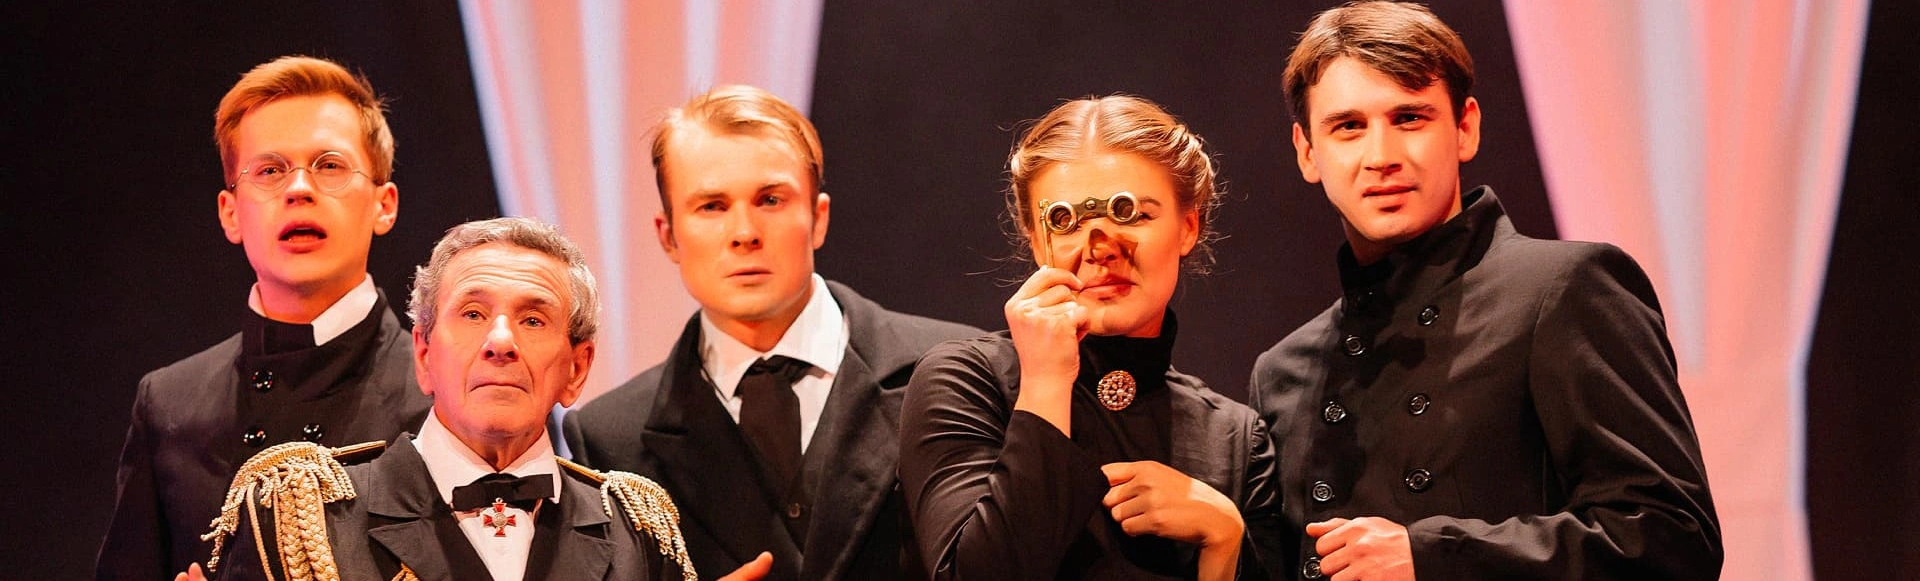 Грандиозное возвращение шедевра "Евгений Онегин" на сцену Театриума на Серпуховке!